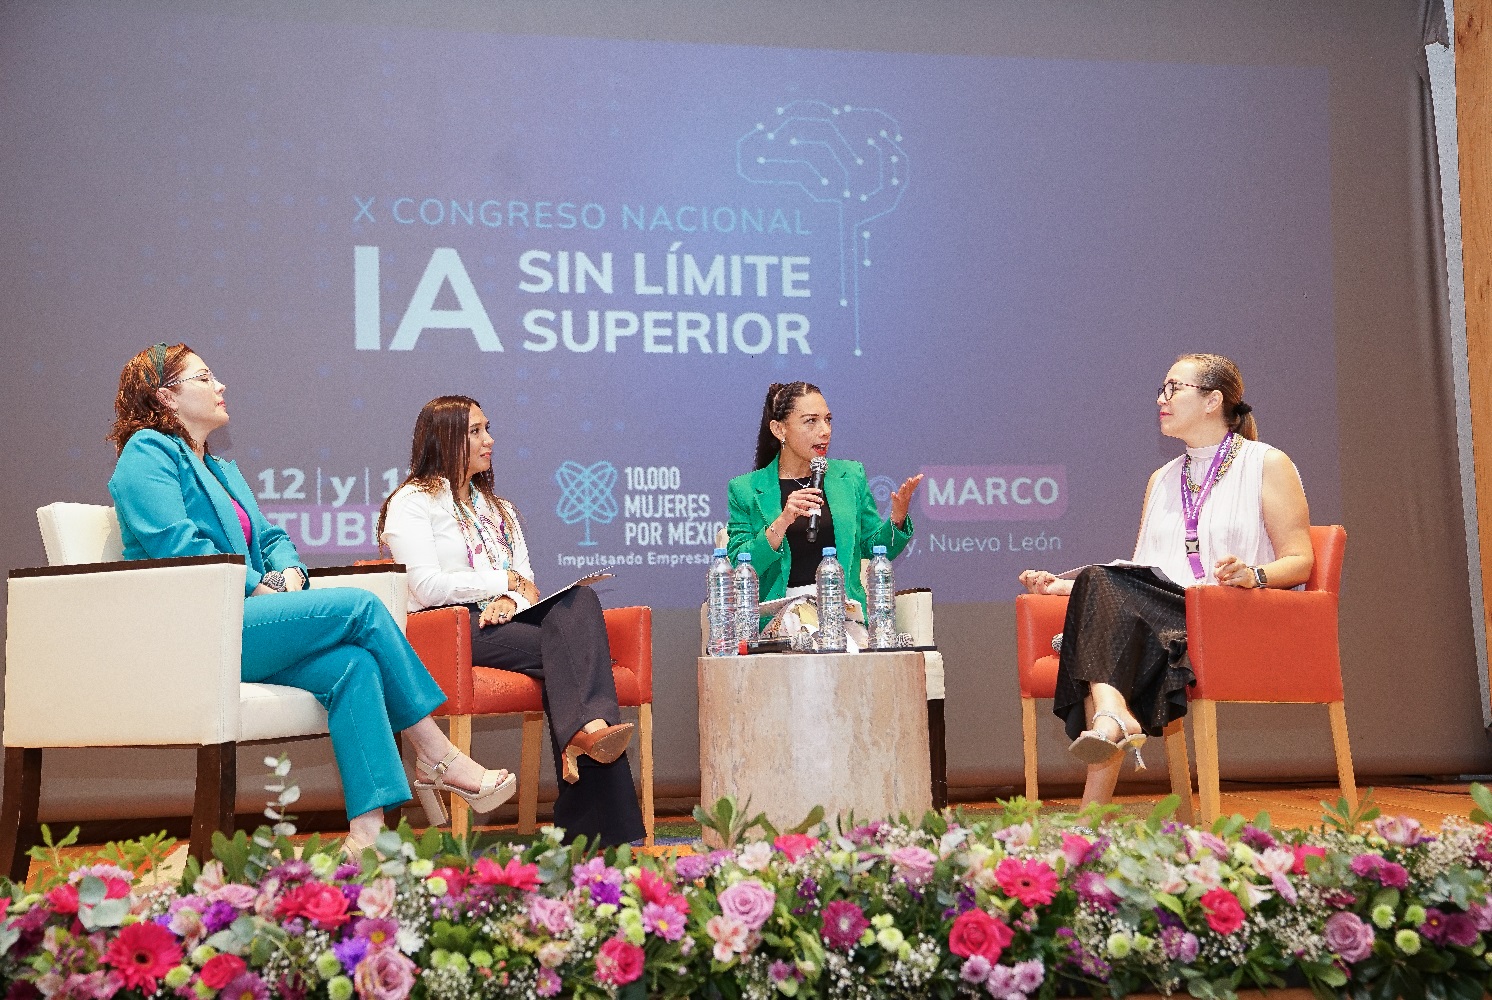 Alexandra Solano directora Centro de Evolución Digital en Congreso 10000 Mujeres por México